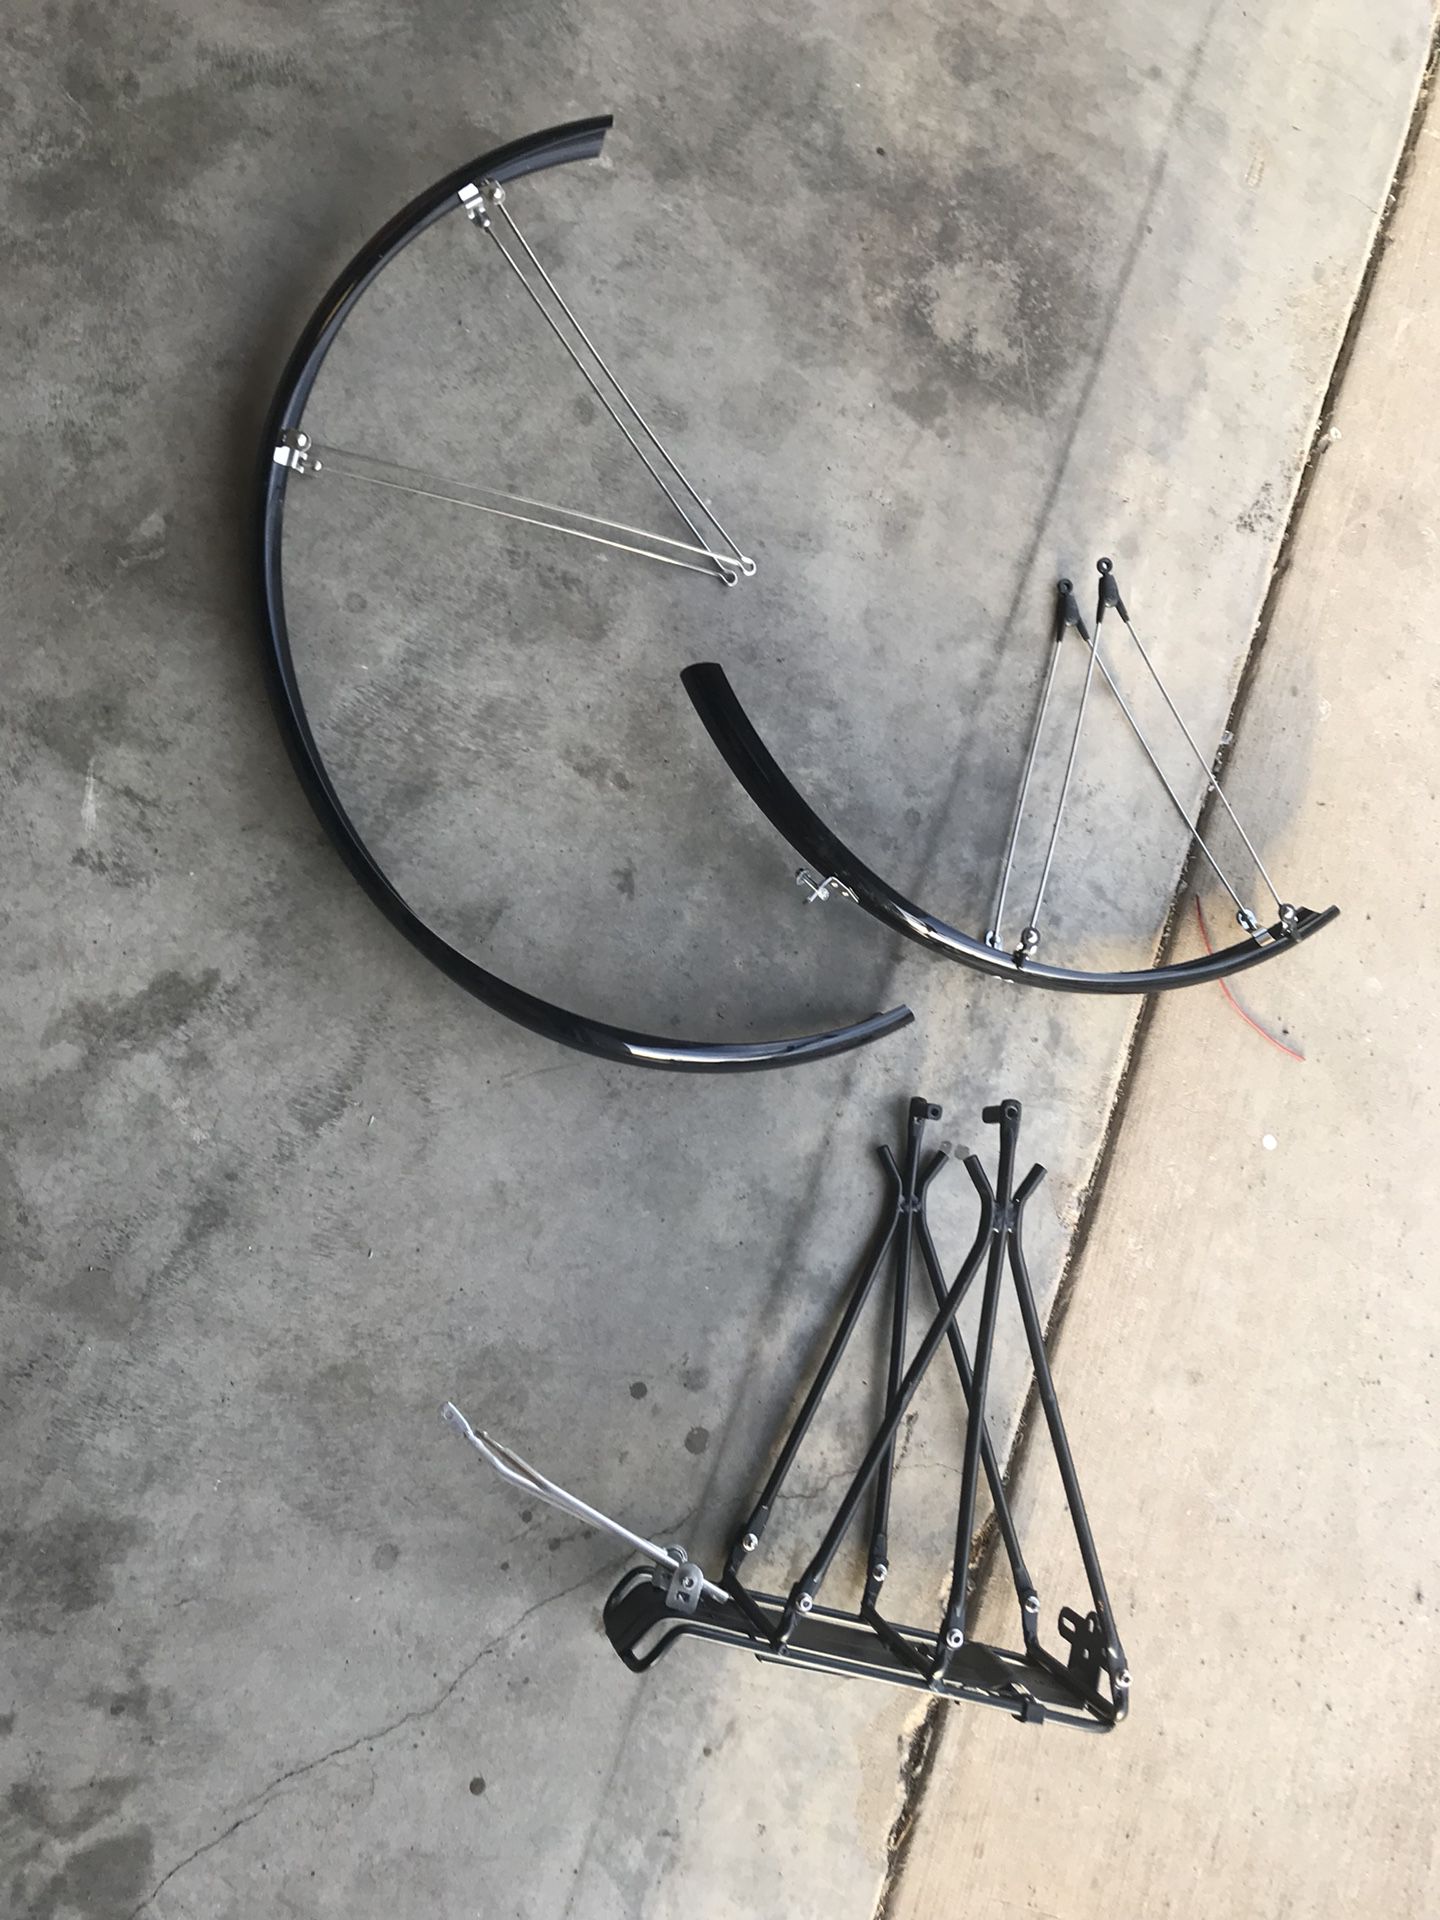 Bike parts $30